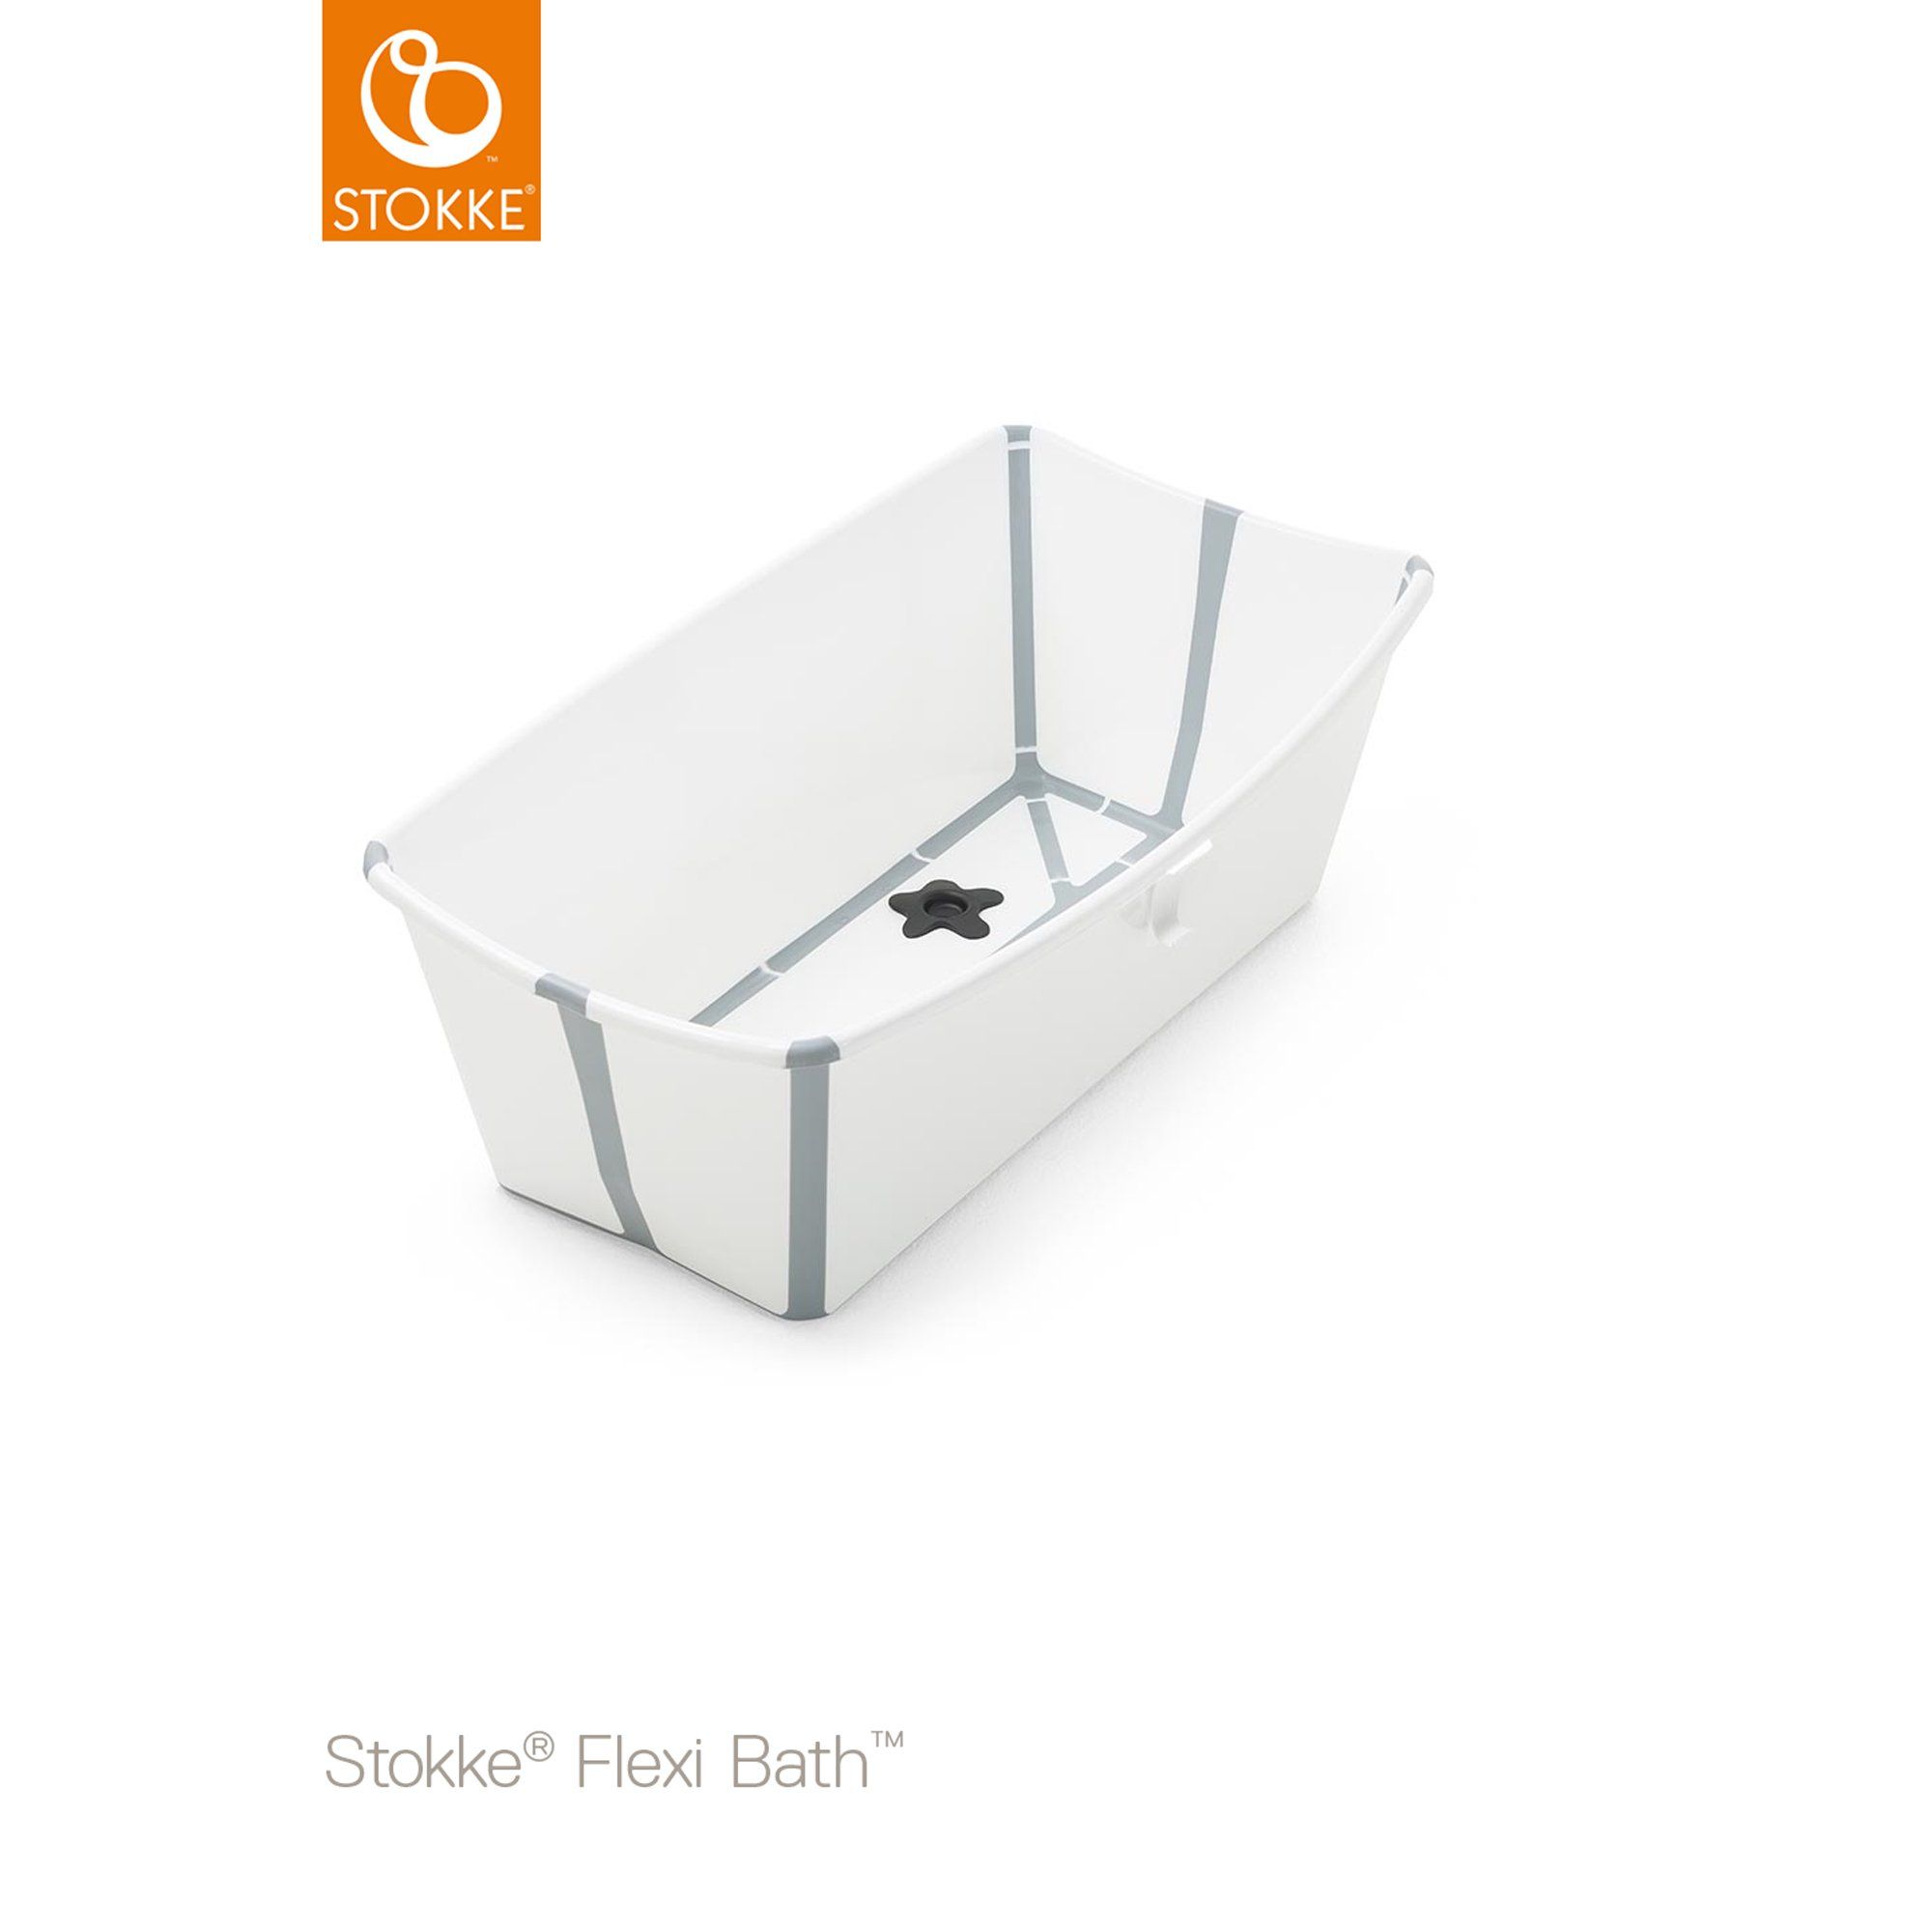 Baignoire Flexi Bath® (Stokke®) - Couverture